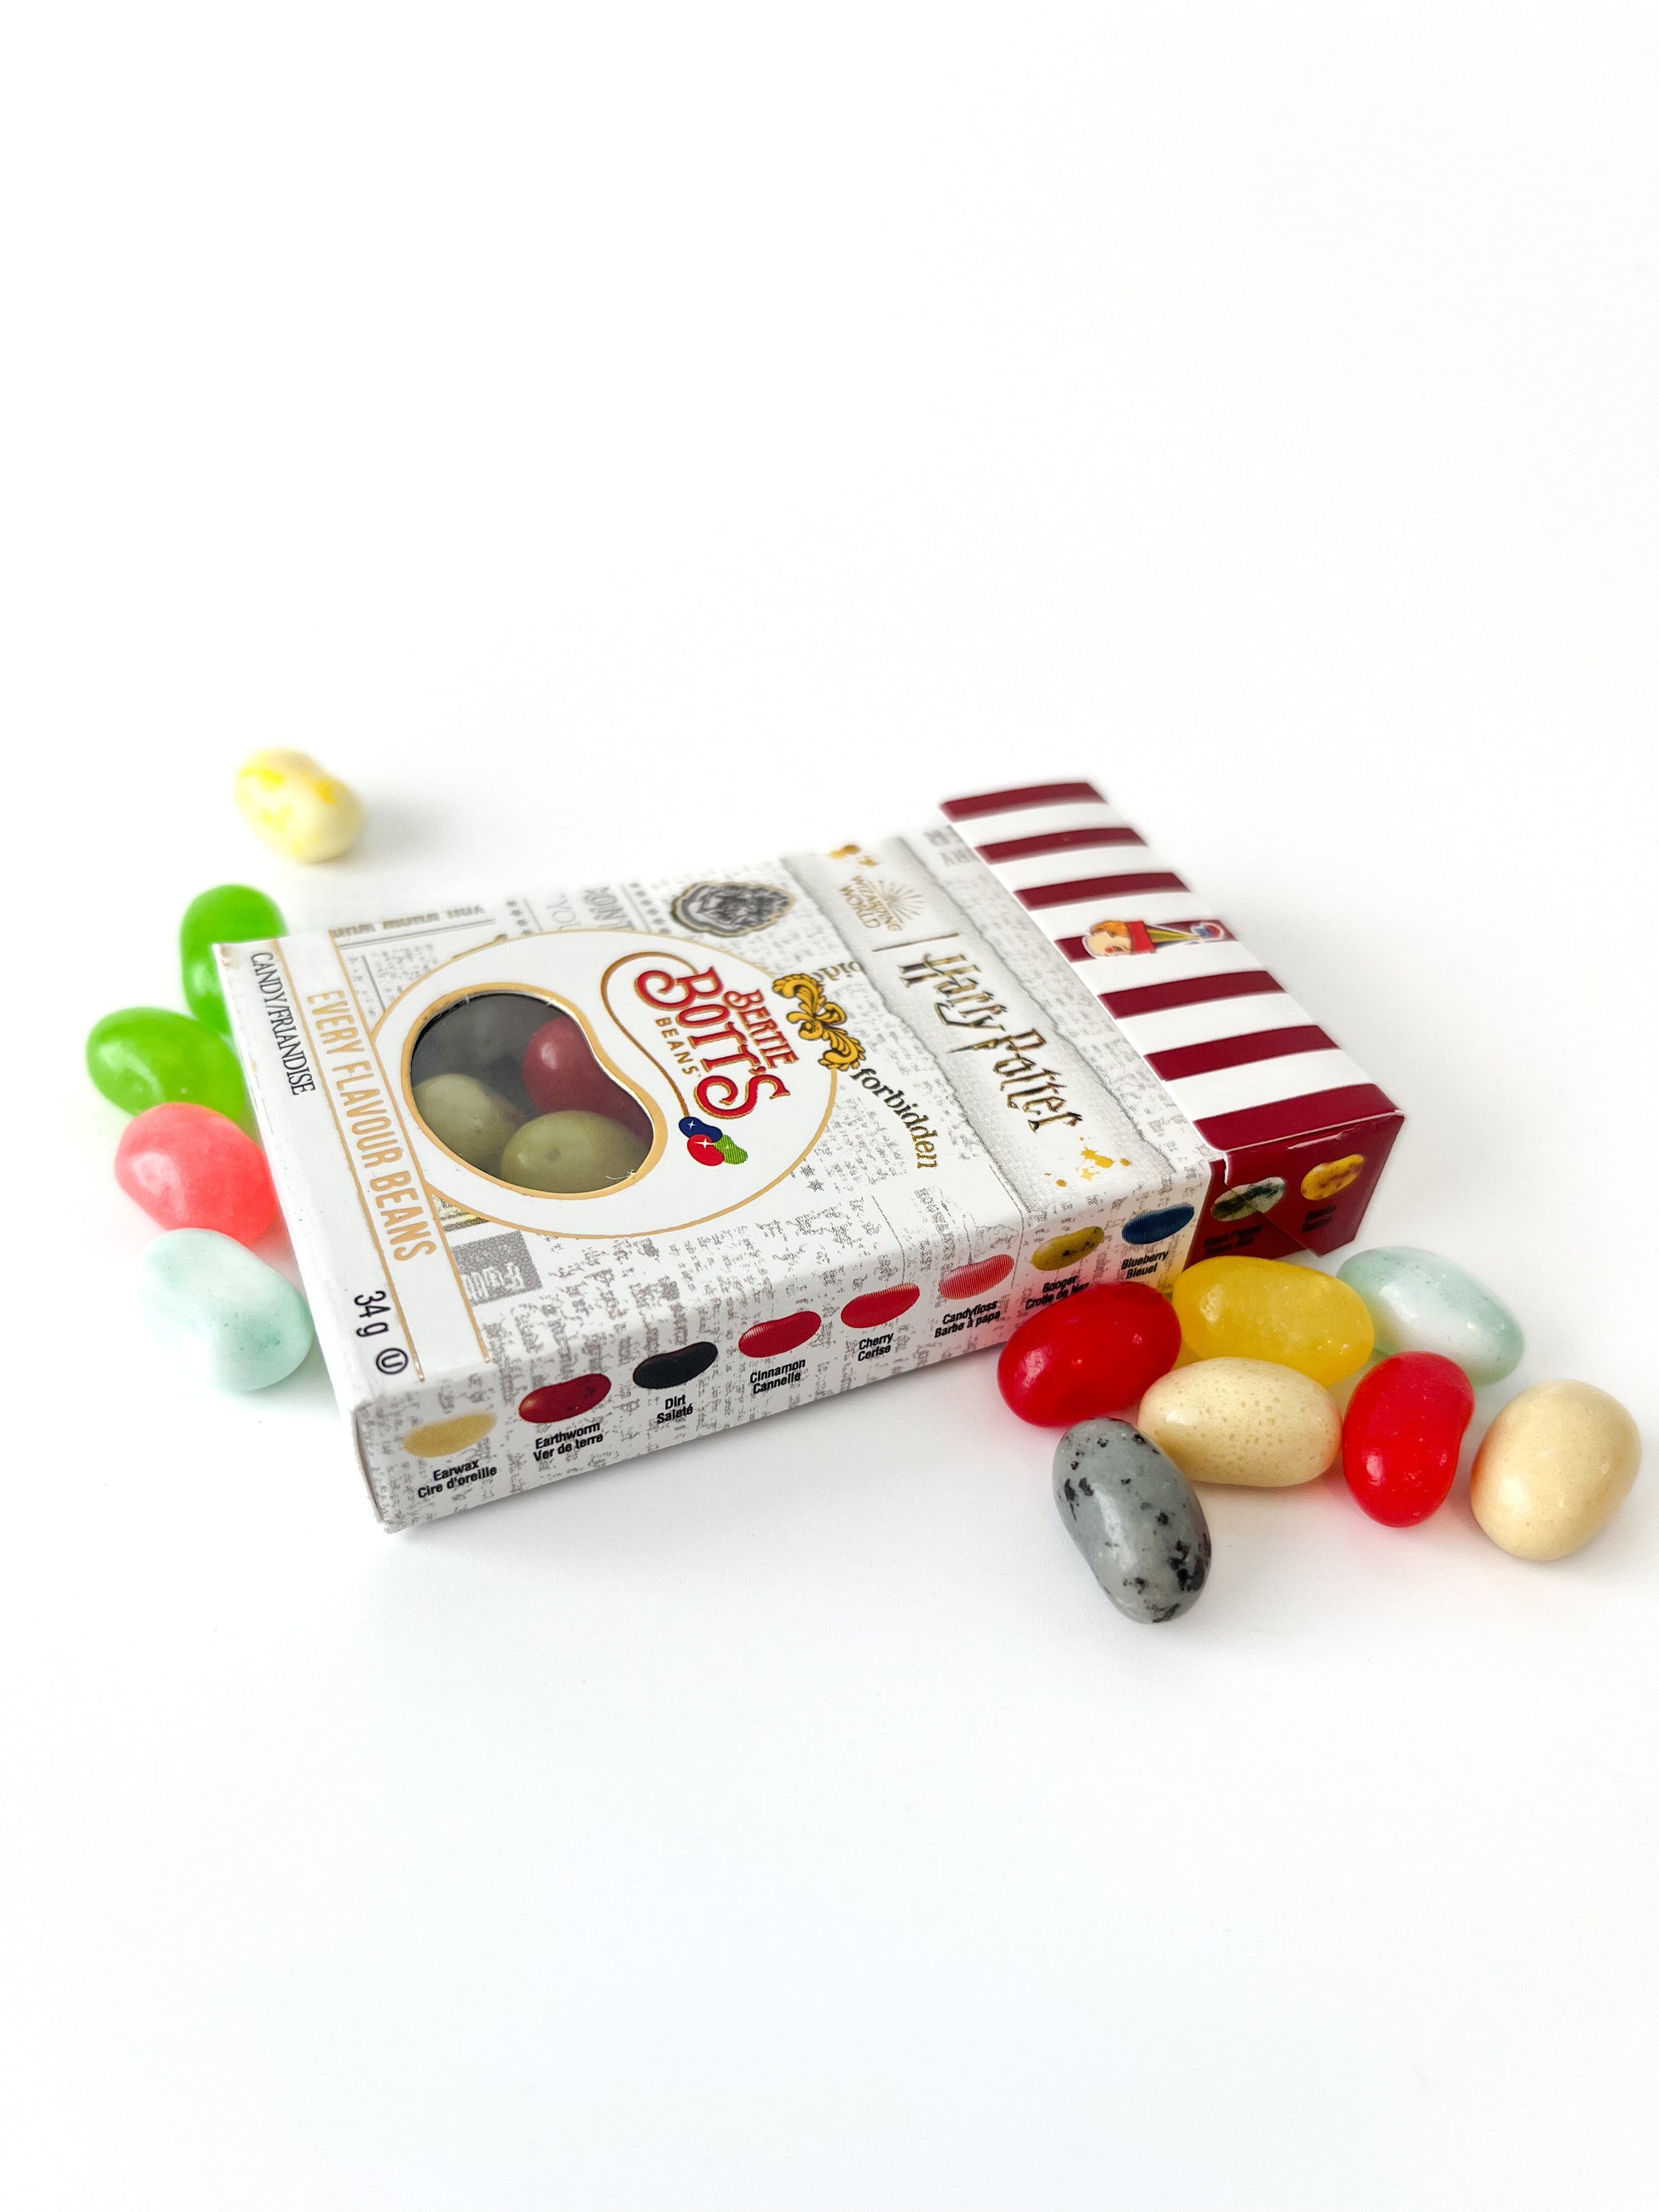 Harry Potter Bertie Bott's Every Flavour Beans Box Harry Potter Pixie Candy Shop   